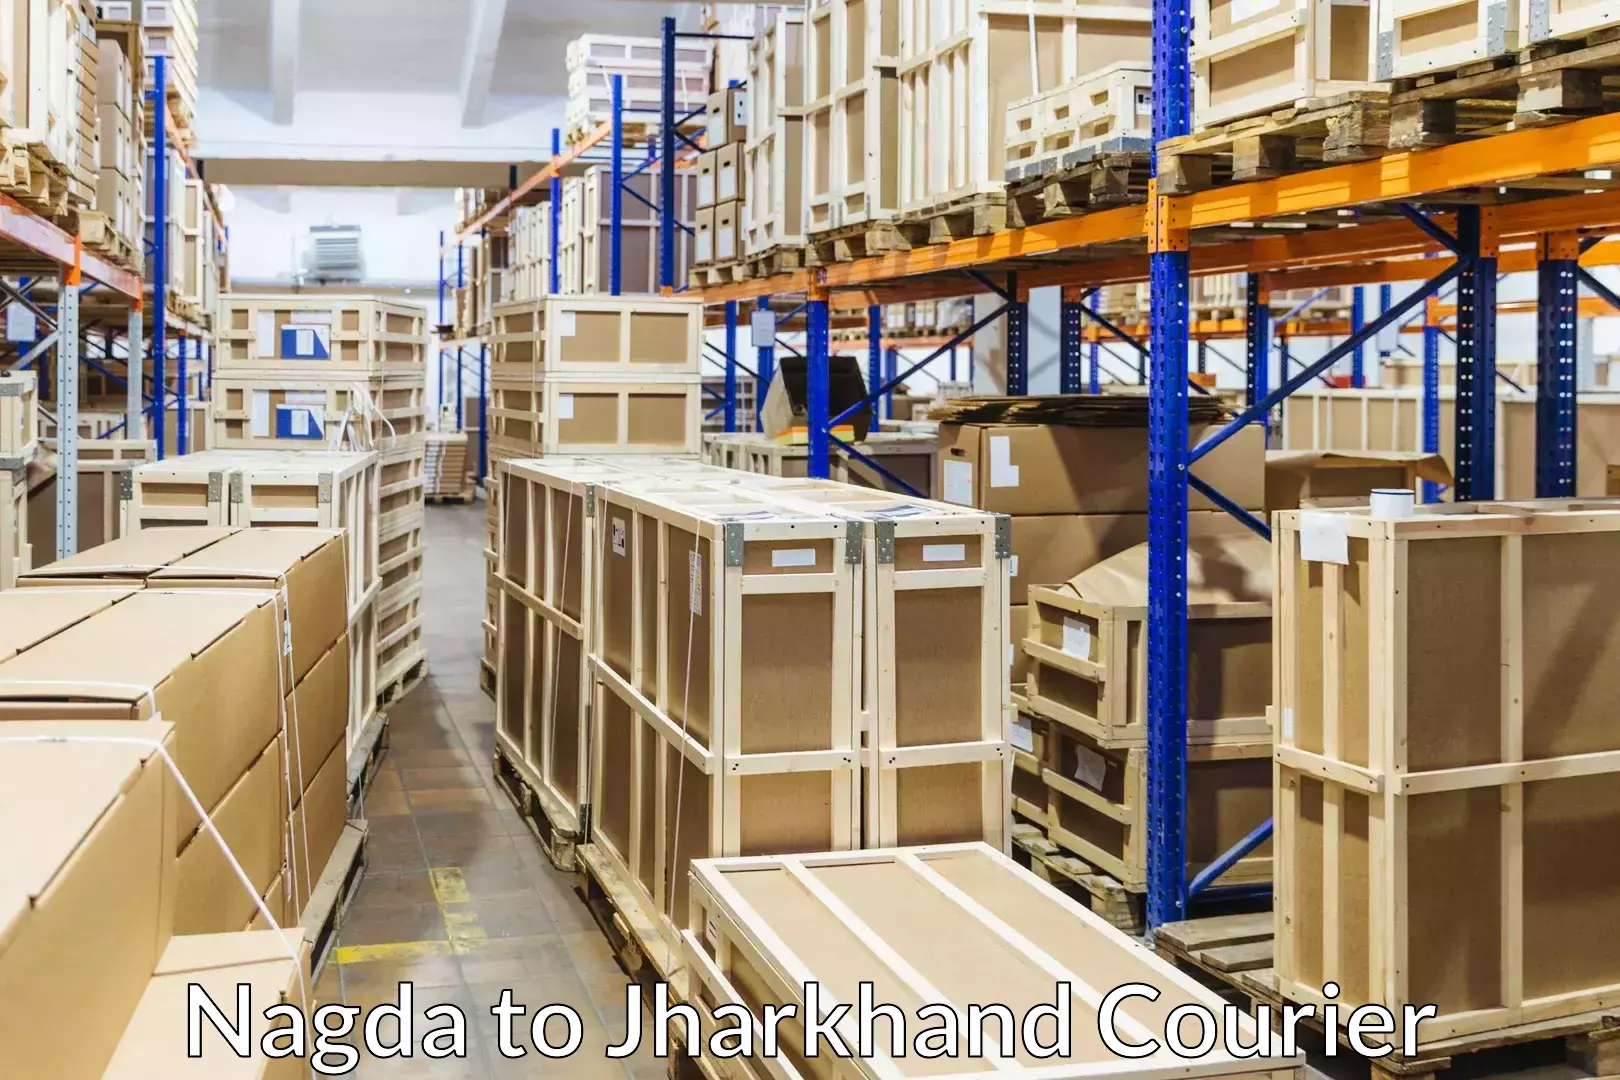 Furniture moving experts Nagda to Medininagar